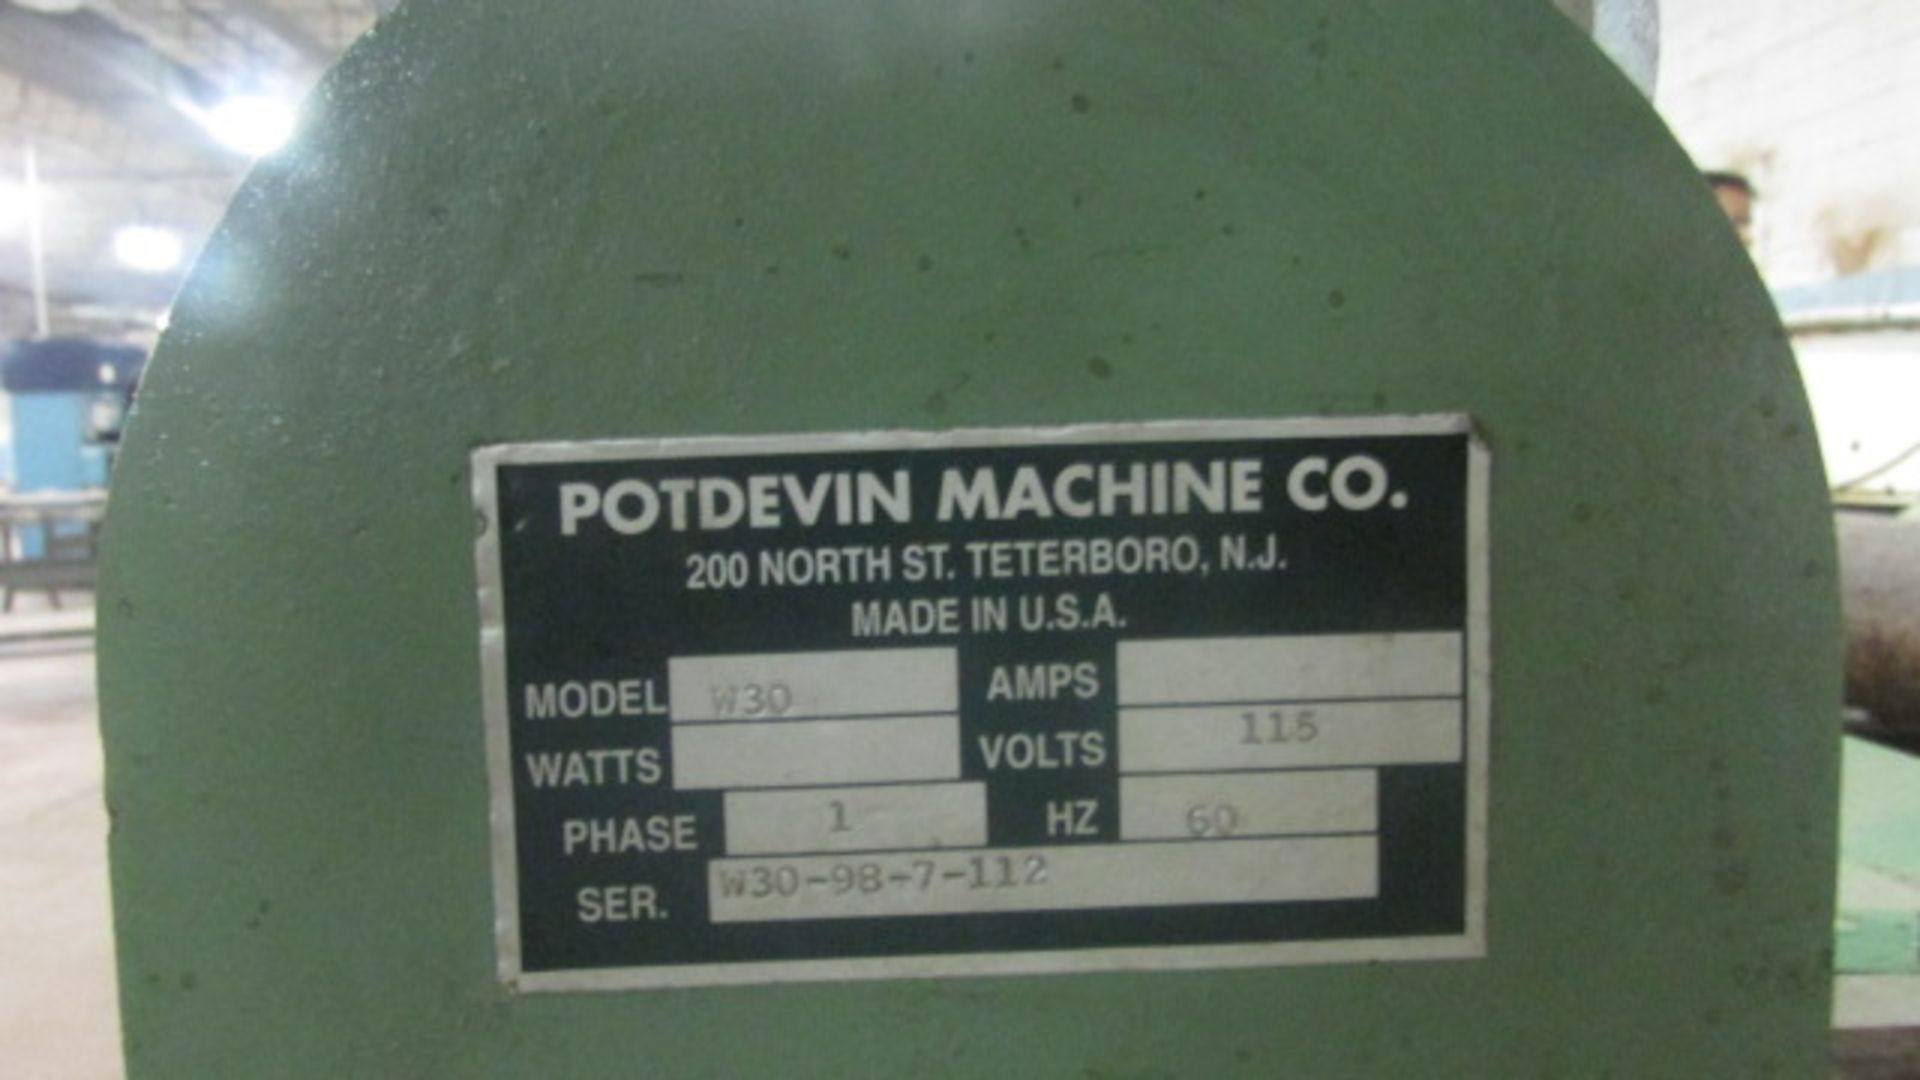 Potdevin Machine Co. Roller, m/n W30/115V, s/n W30-98-7-112 - Image 3 of 3